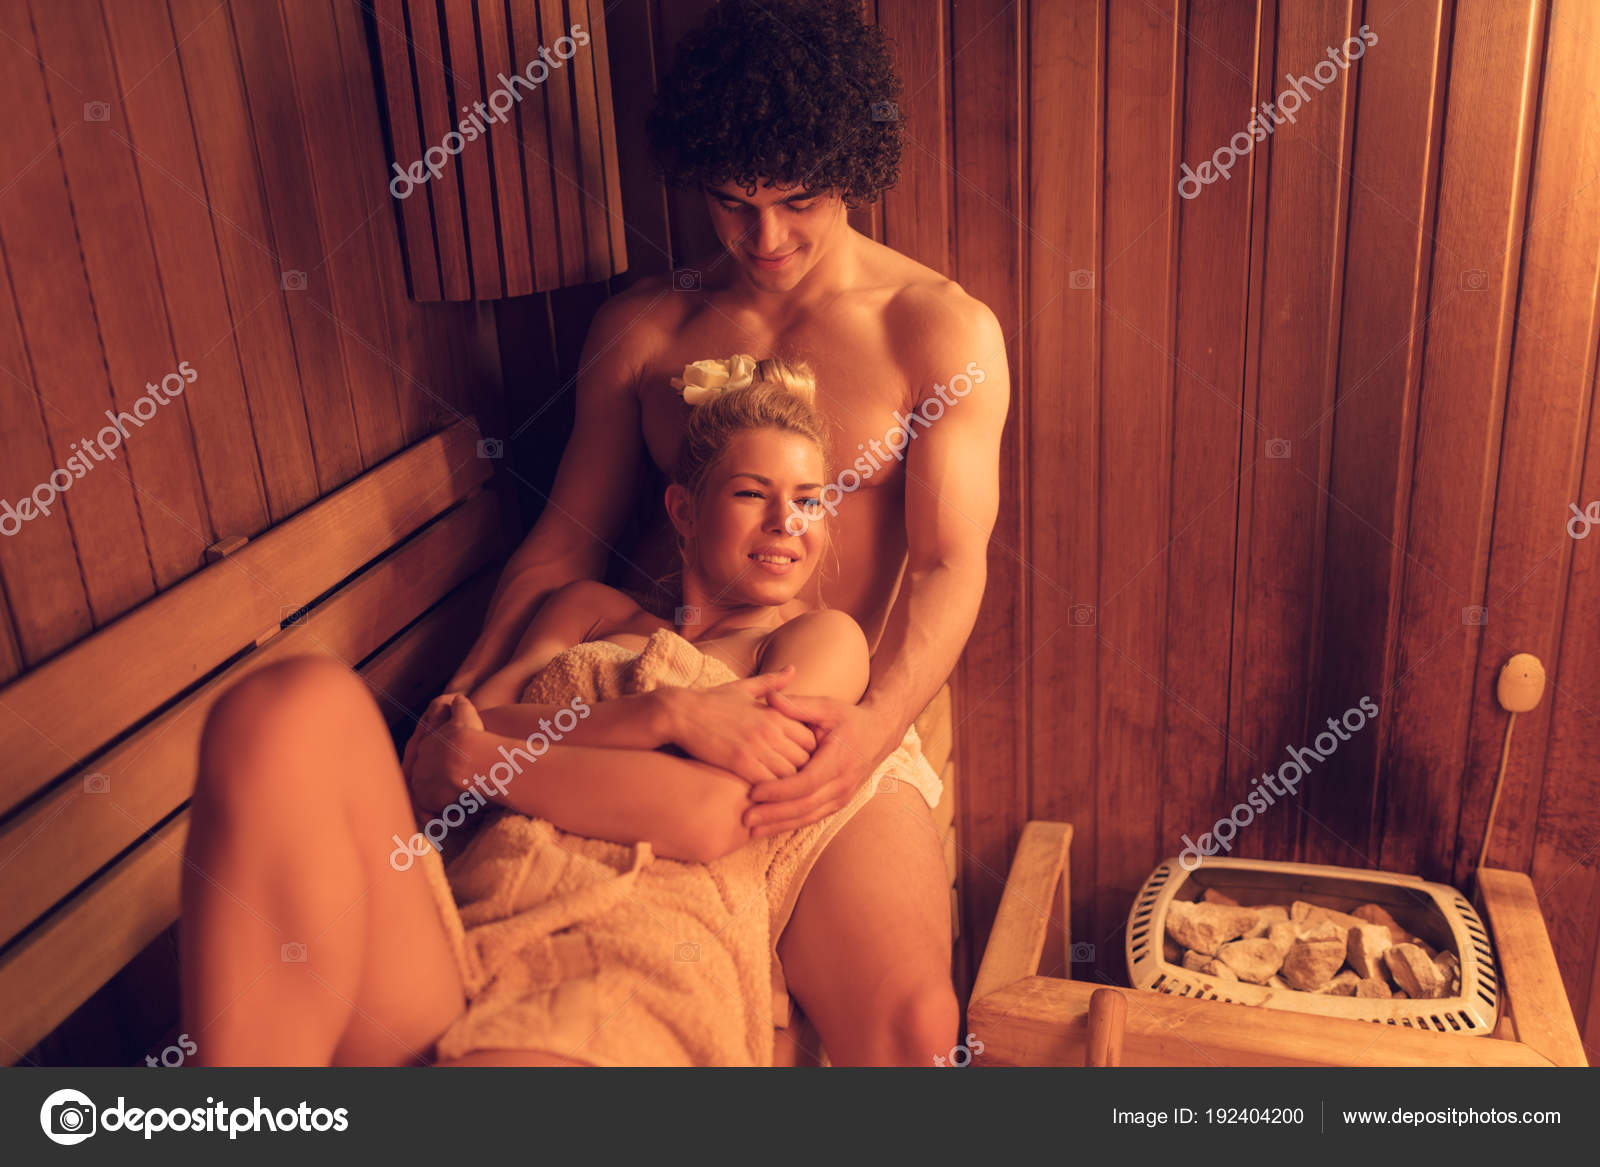 в русскую баню голыми всей семьей фото 86